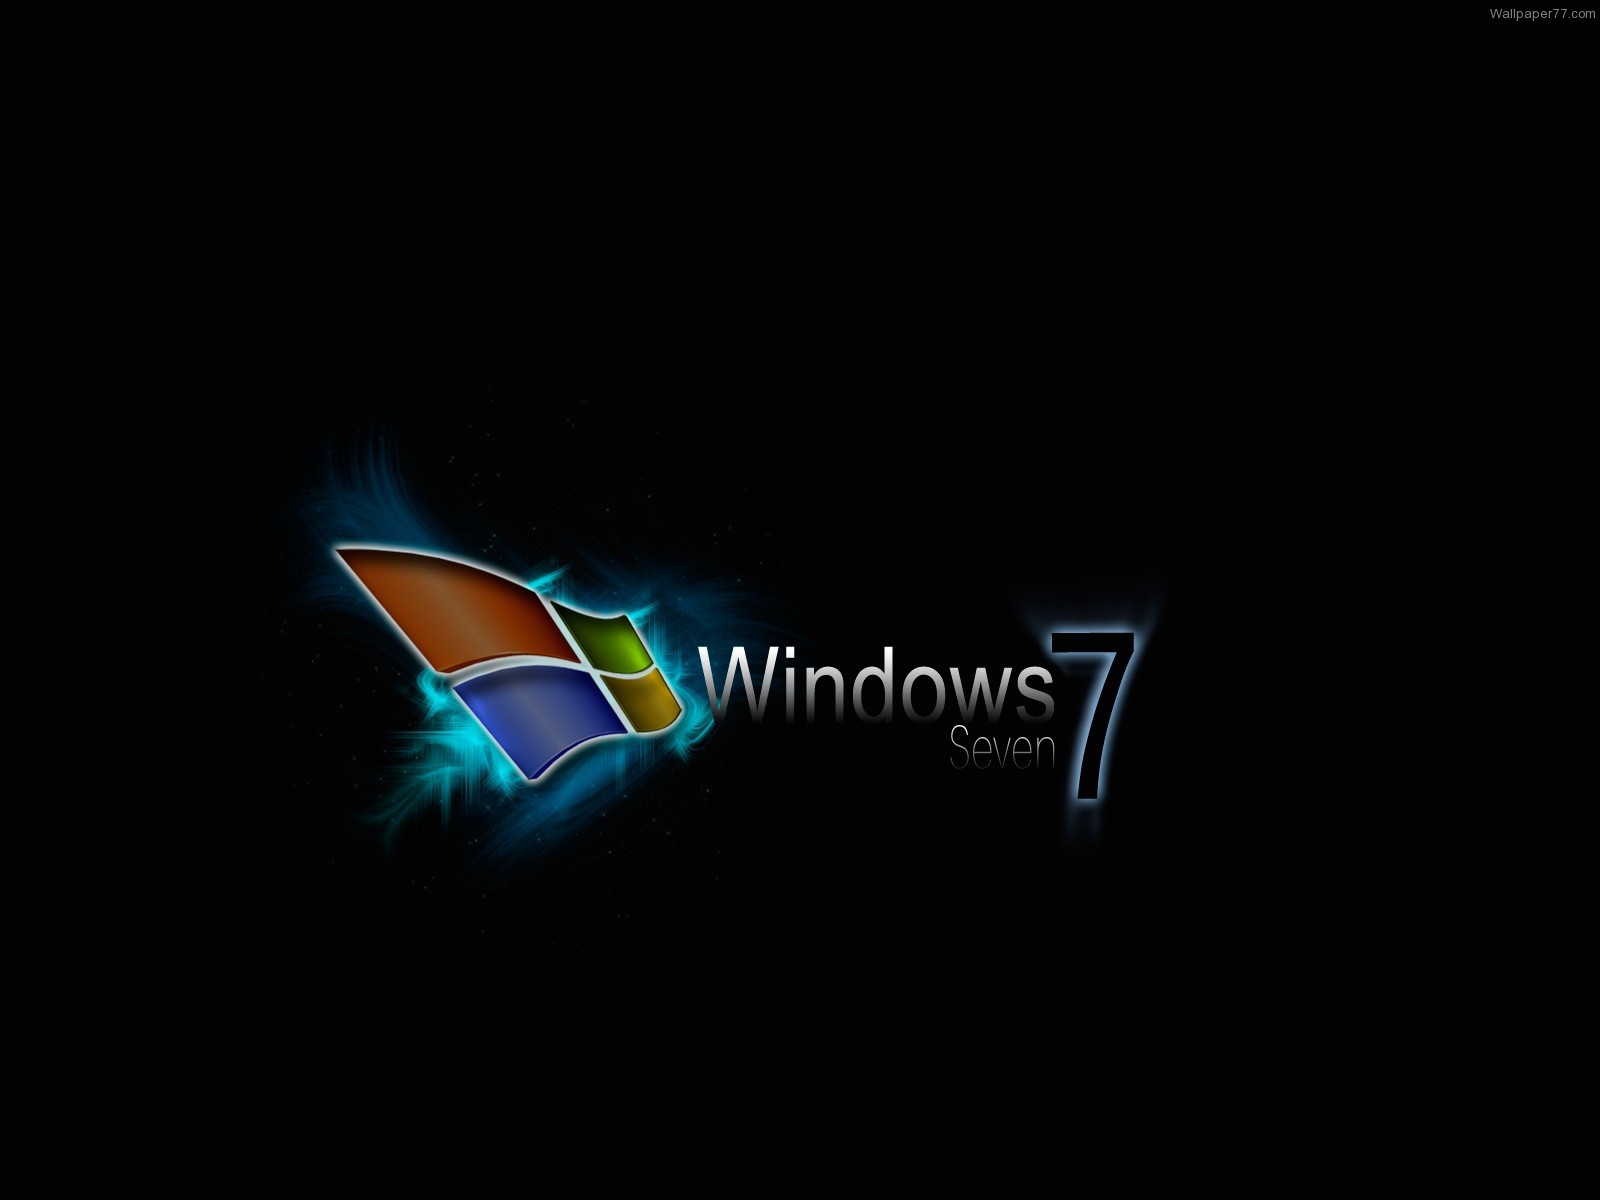 http://4.bp.blogspot.com/-38iqvXJnevA/TjU9JCXQDII/AAAAAAAAApQ/CKRibitFqxw/s1600/animated_wallpaper_for_windows7.jpg